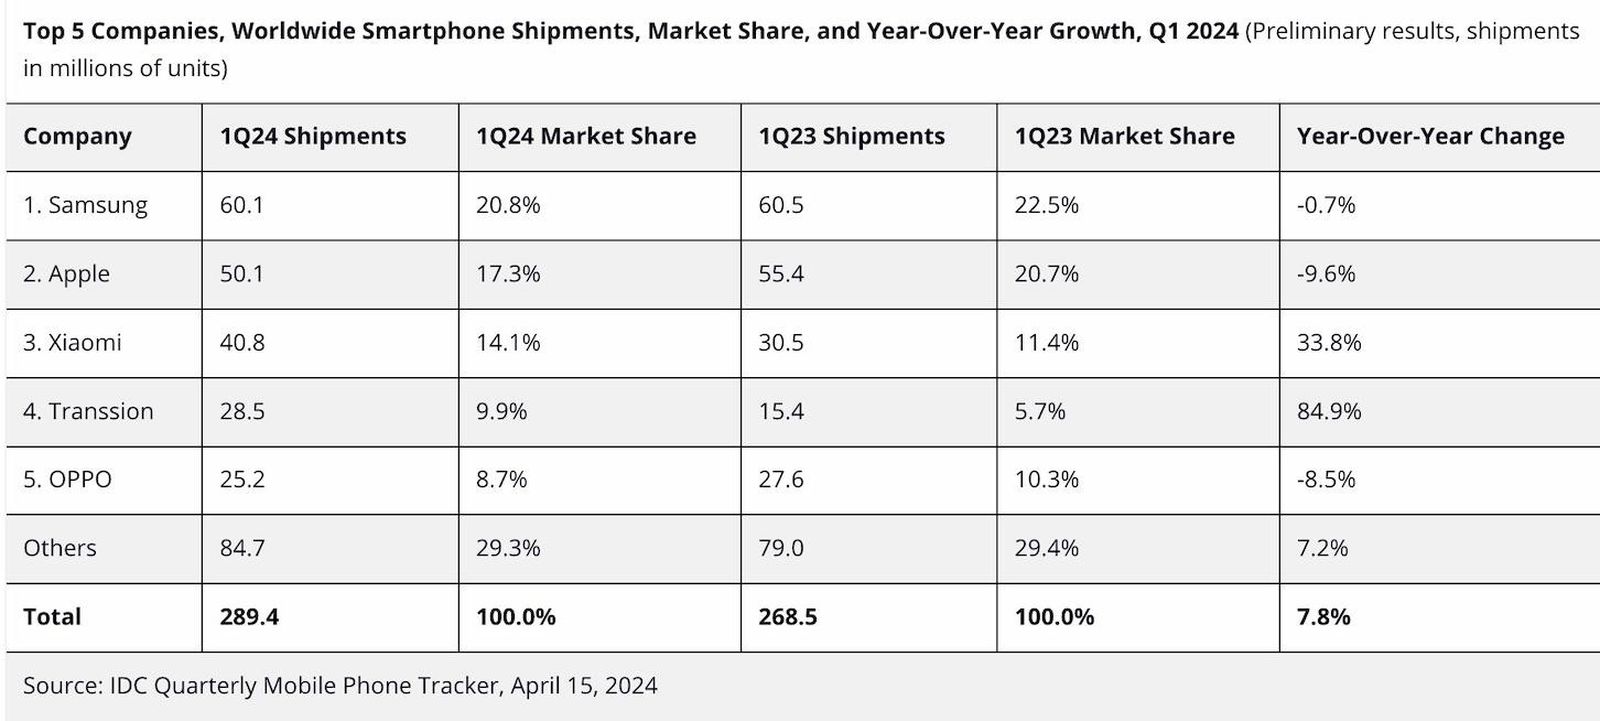 من iPhoneIslam.com، جدول يوضح شحنات الهواتف الذكية لأفضل 5 شركات حول العالم، وحصة السوق، والنمو السنوي في الربع الأول من عام 2024، مع مقارنة البيانات اعتبارًا من أبريل 2023.